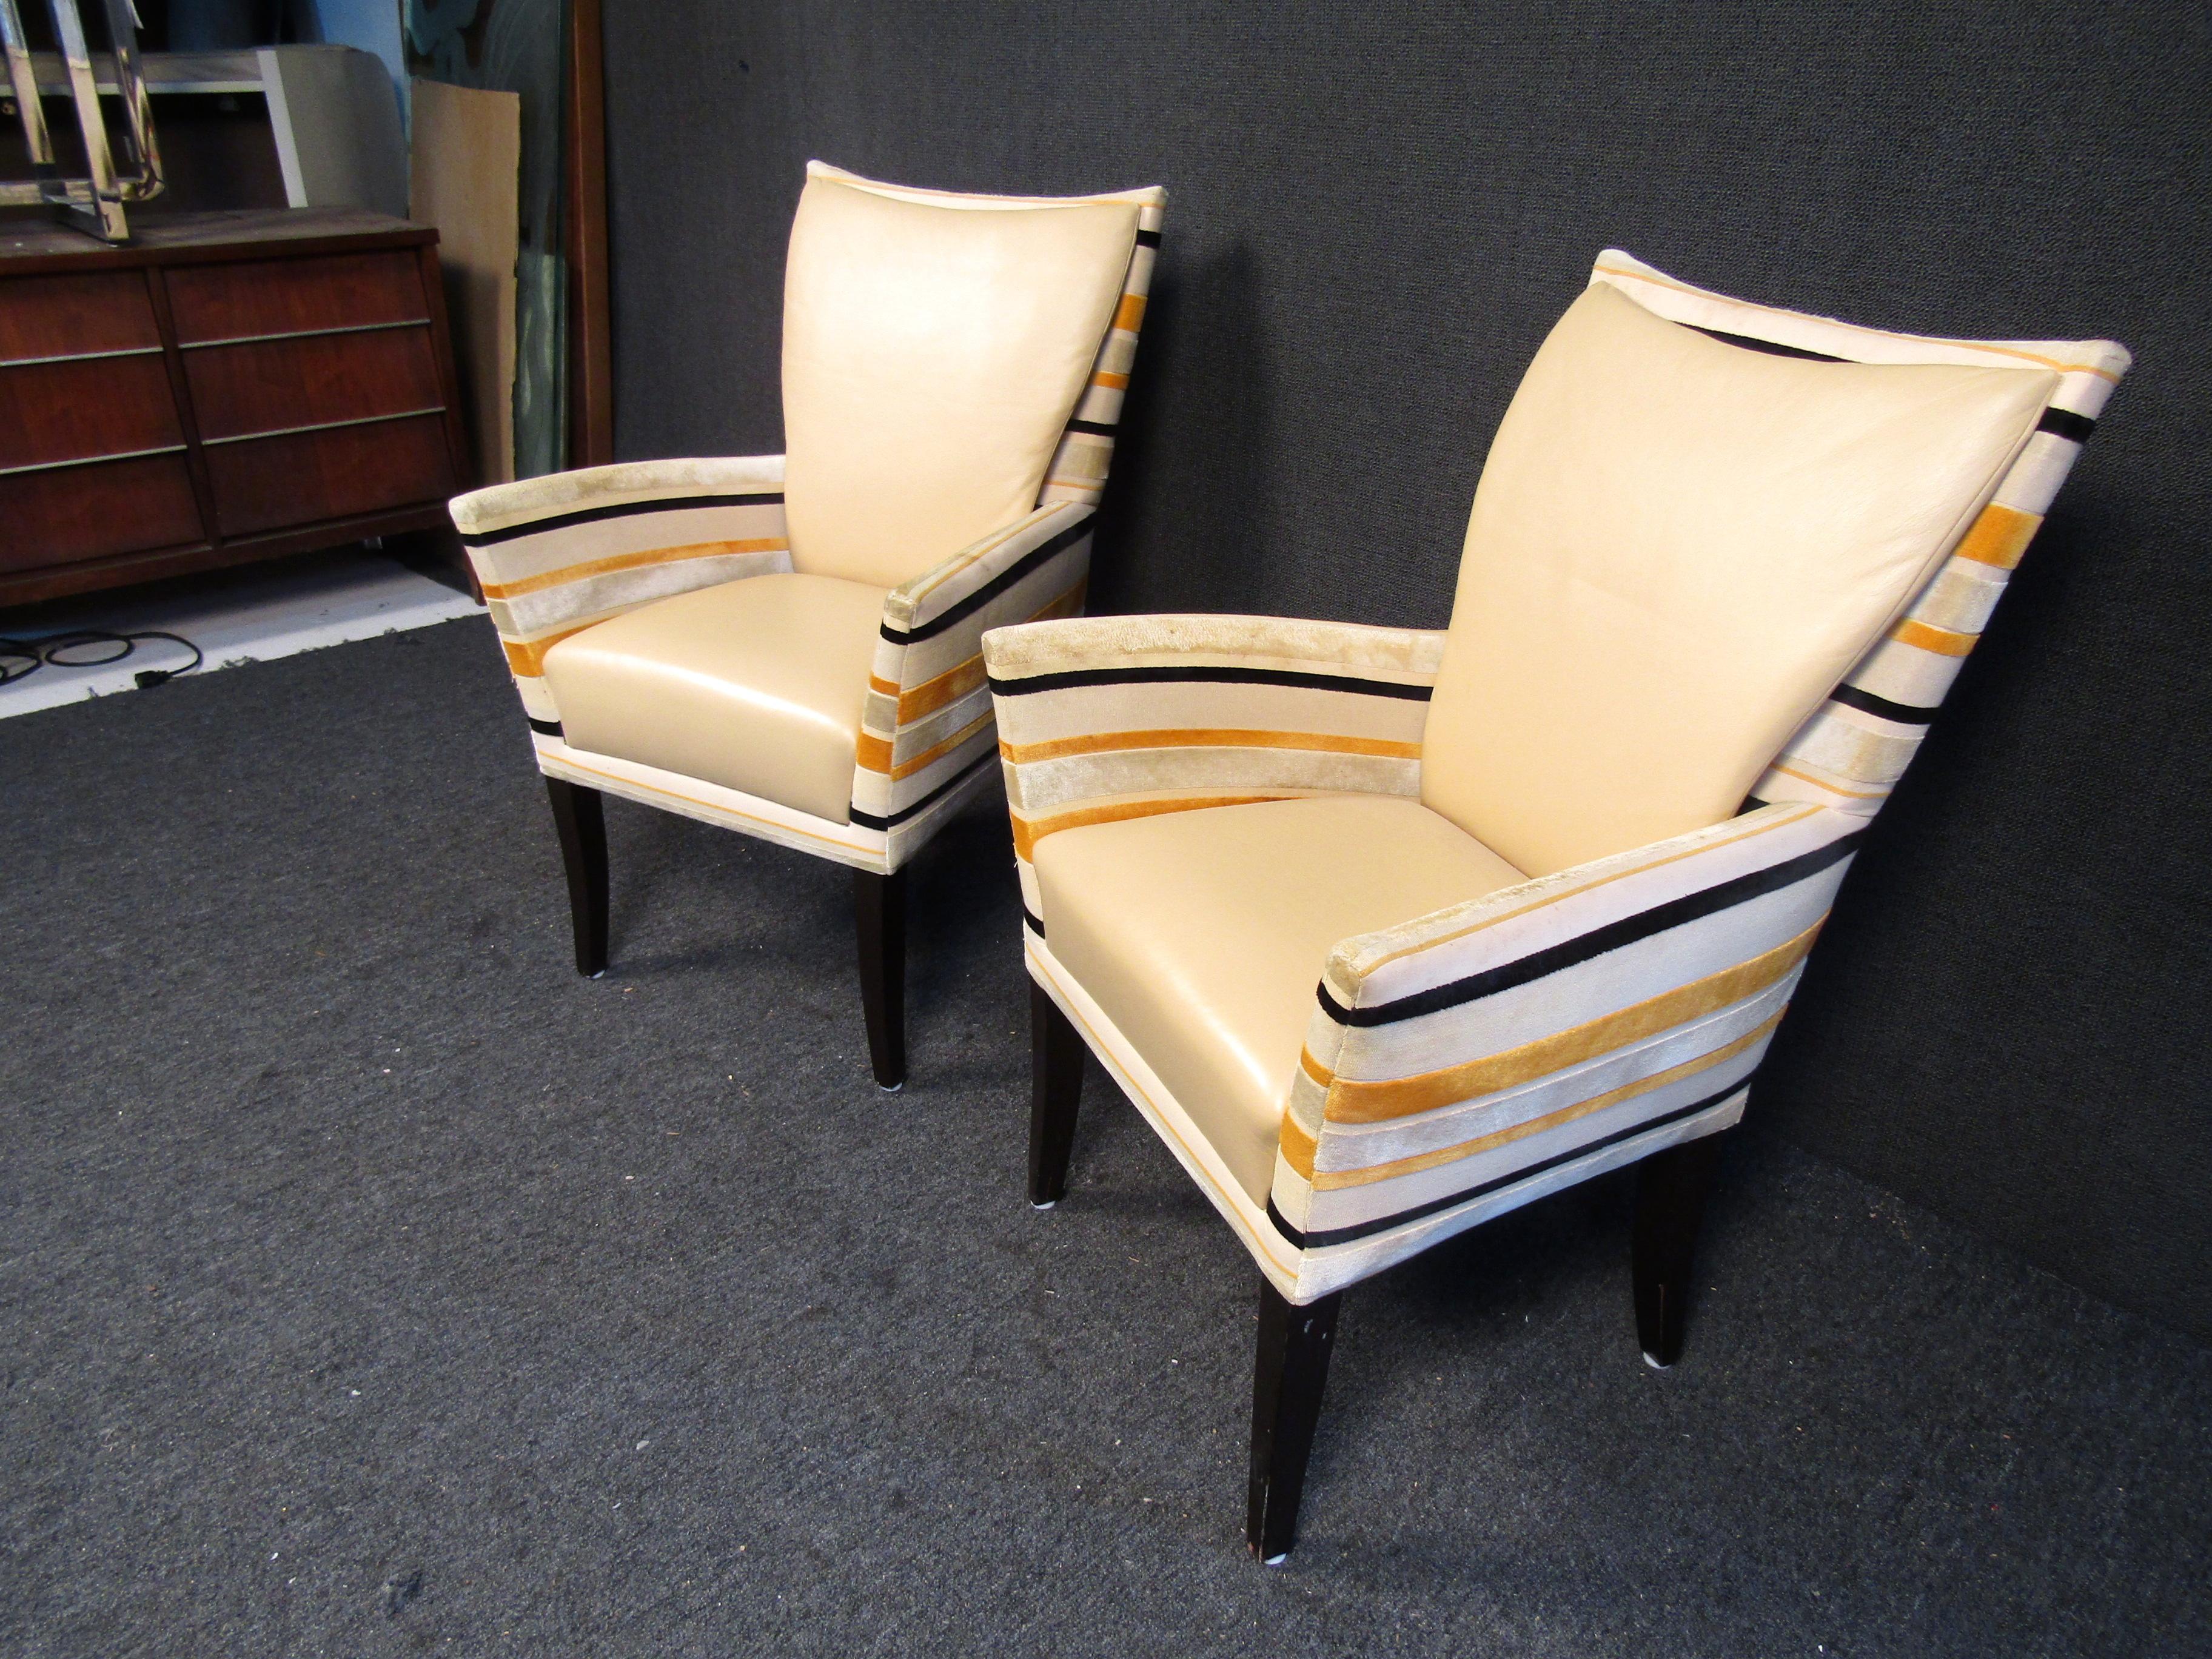 Diese stilvollen Loungesessel haben Rücken- und Sitzlehnen aus Vinyl, eine gestreifte Polsterung und konische Holzbeine. Wenn Sie einen Raum mit Sitzgelegenheiten im Retrostil ausstatten möchten, sind diese eine perfekte Ergänzung.

Bitte